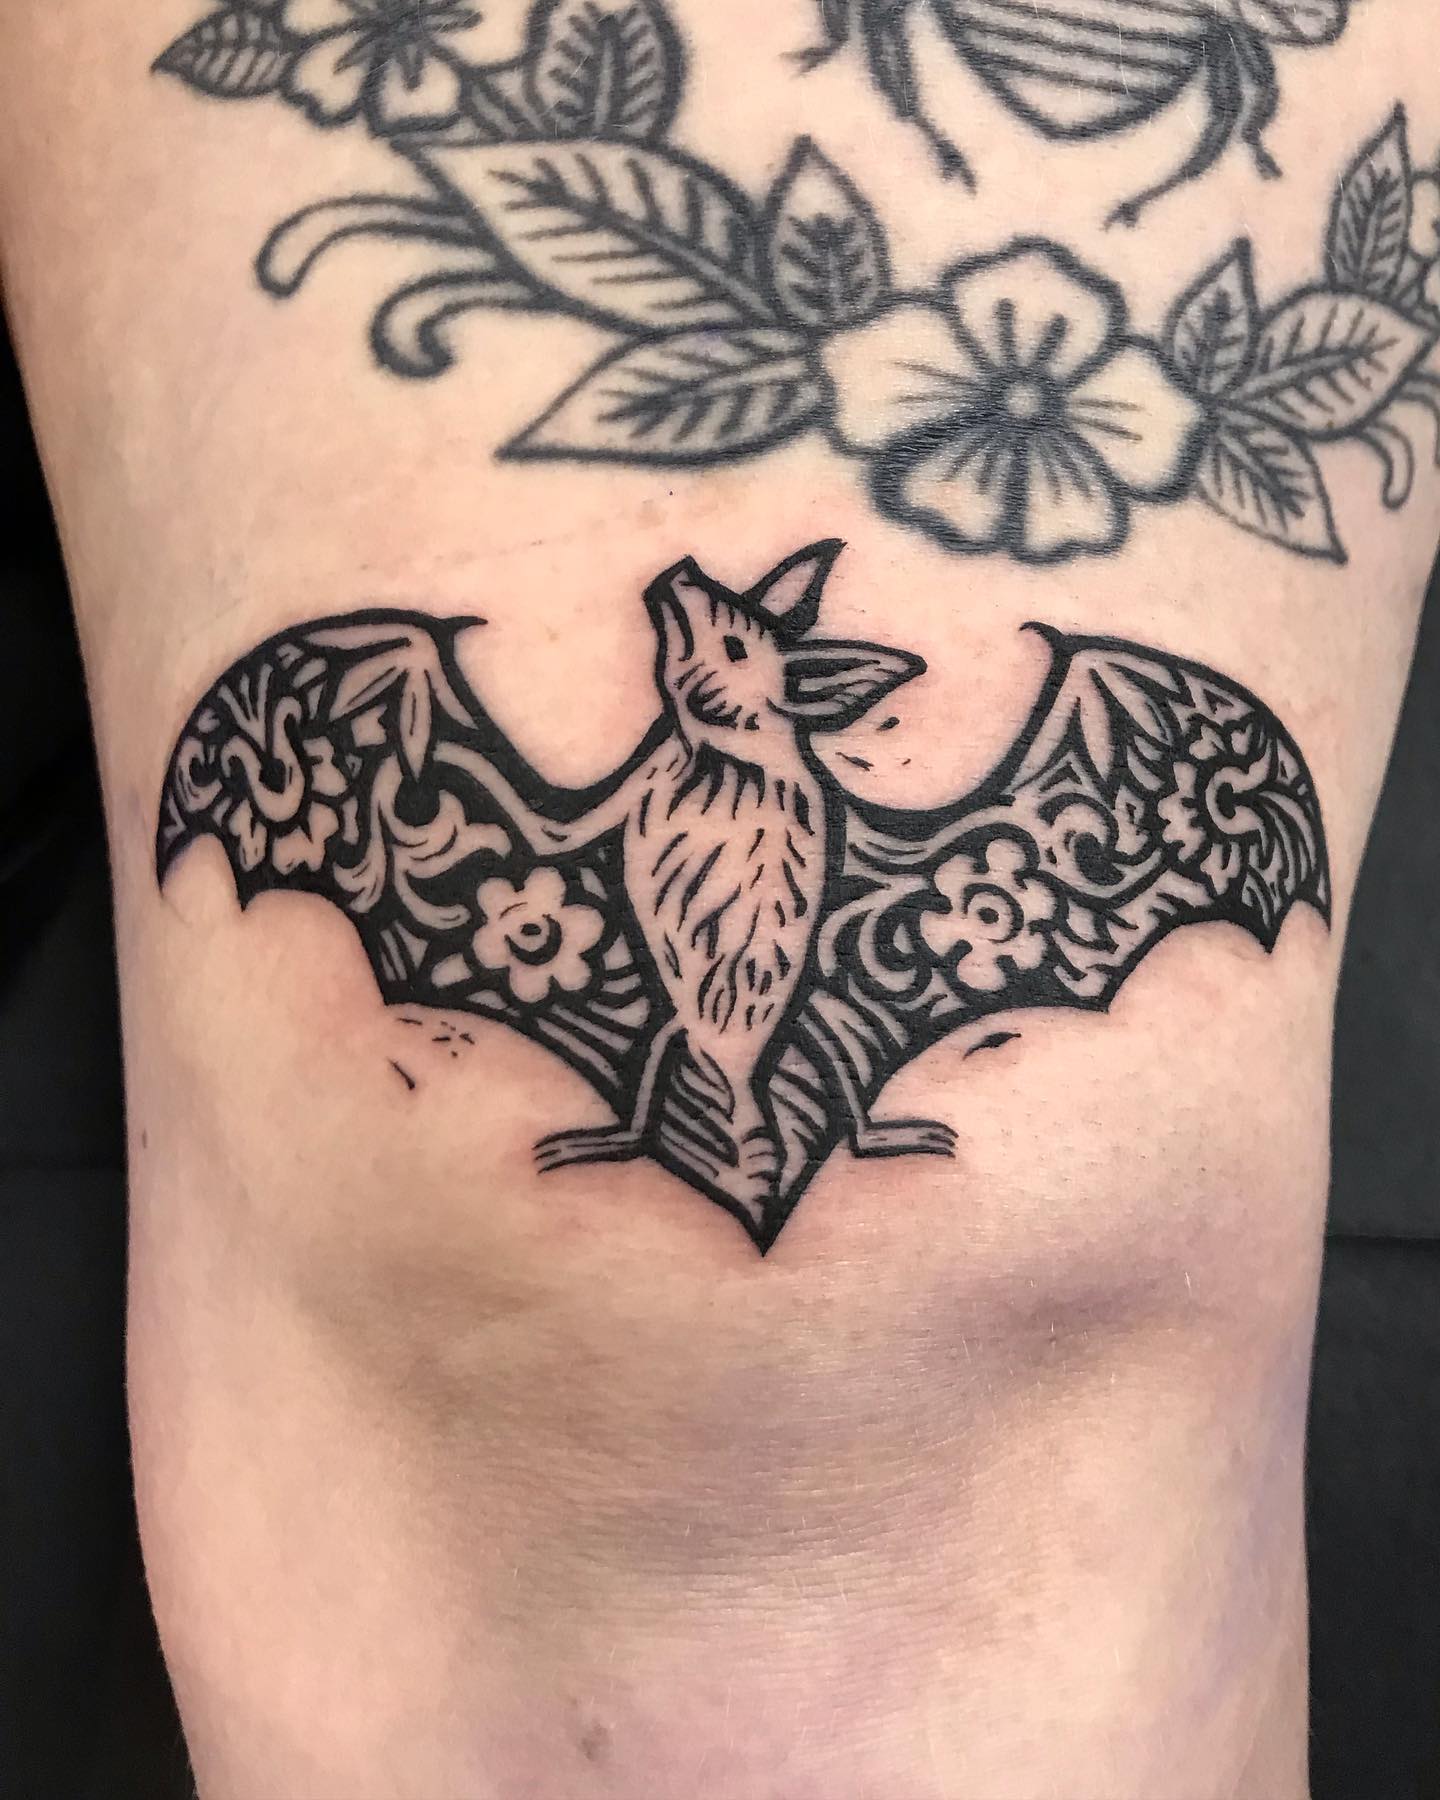 Bat tattoo ideas